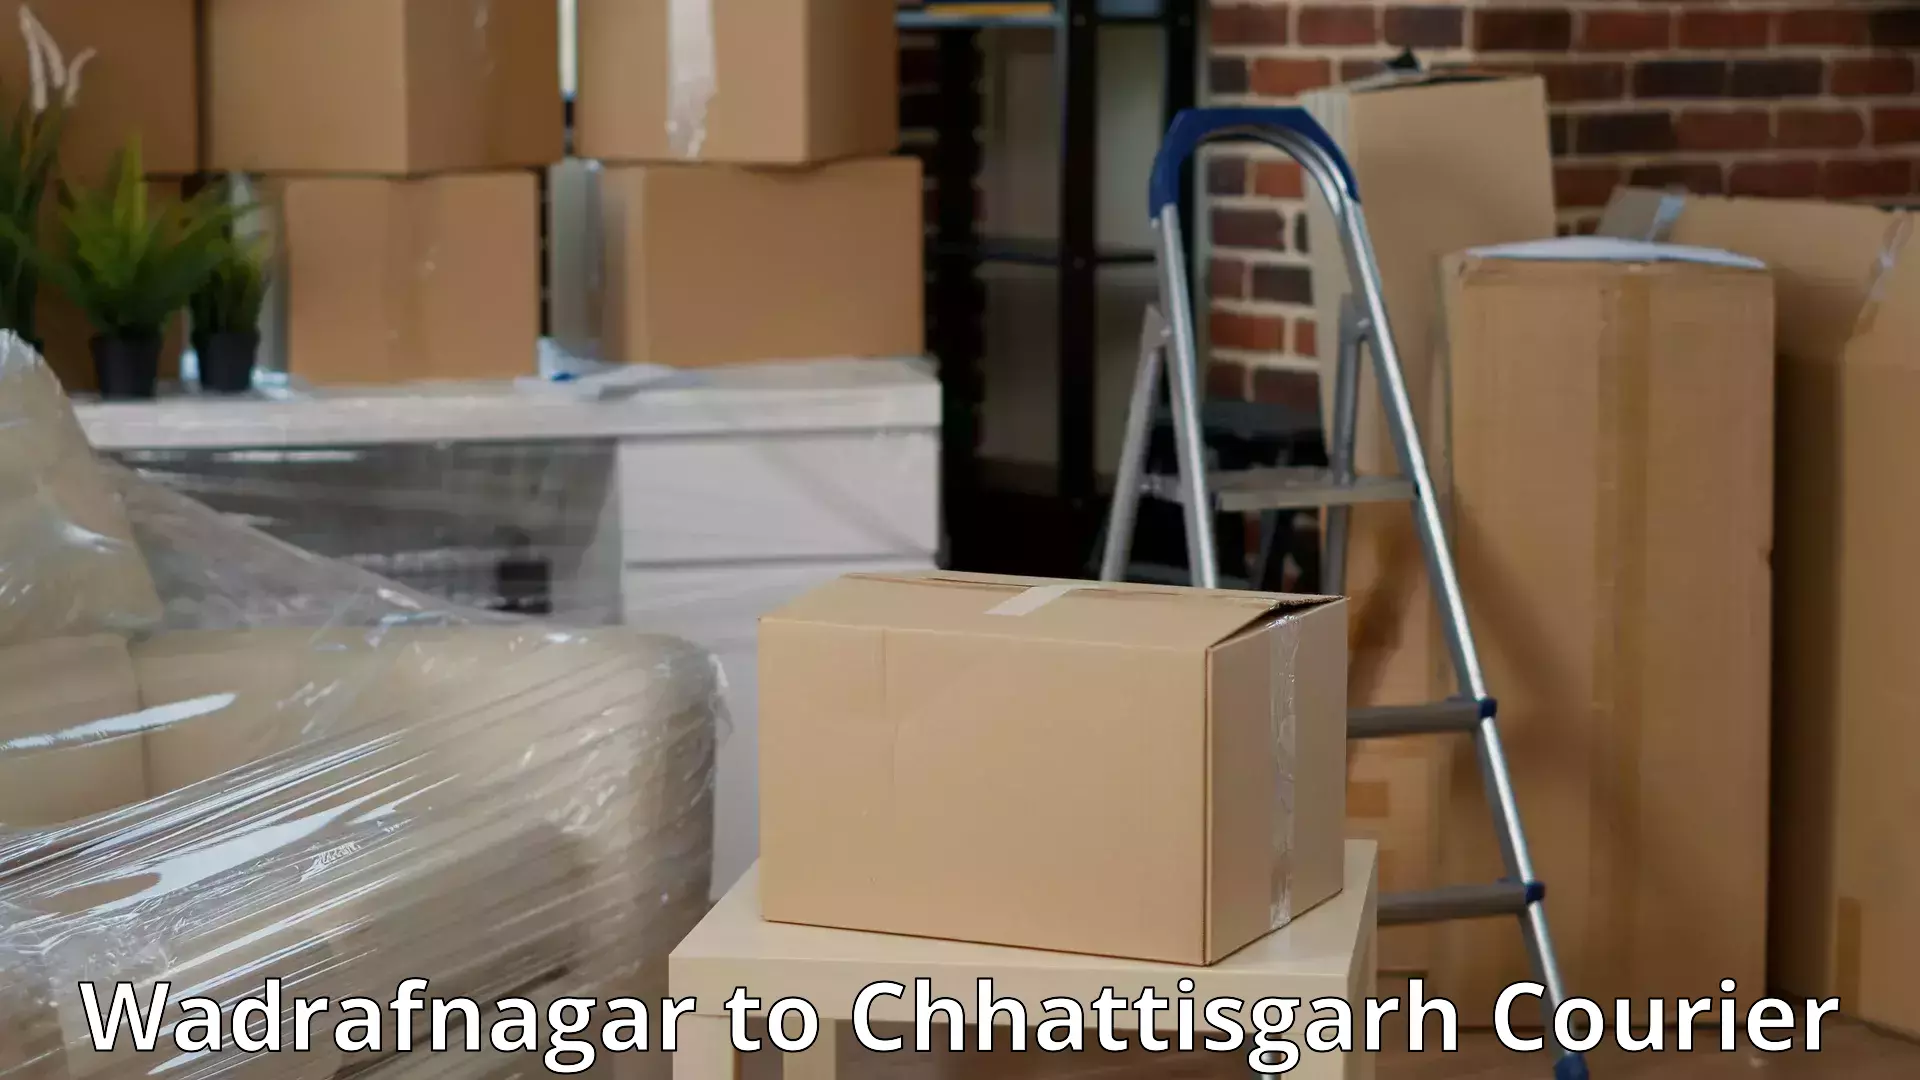 Furniture moving experts Wadrafnagar to Sarangarh